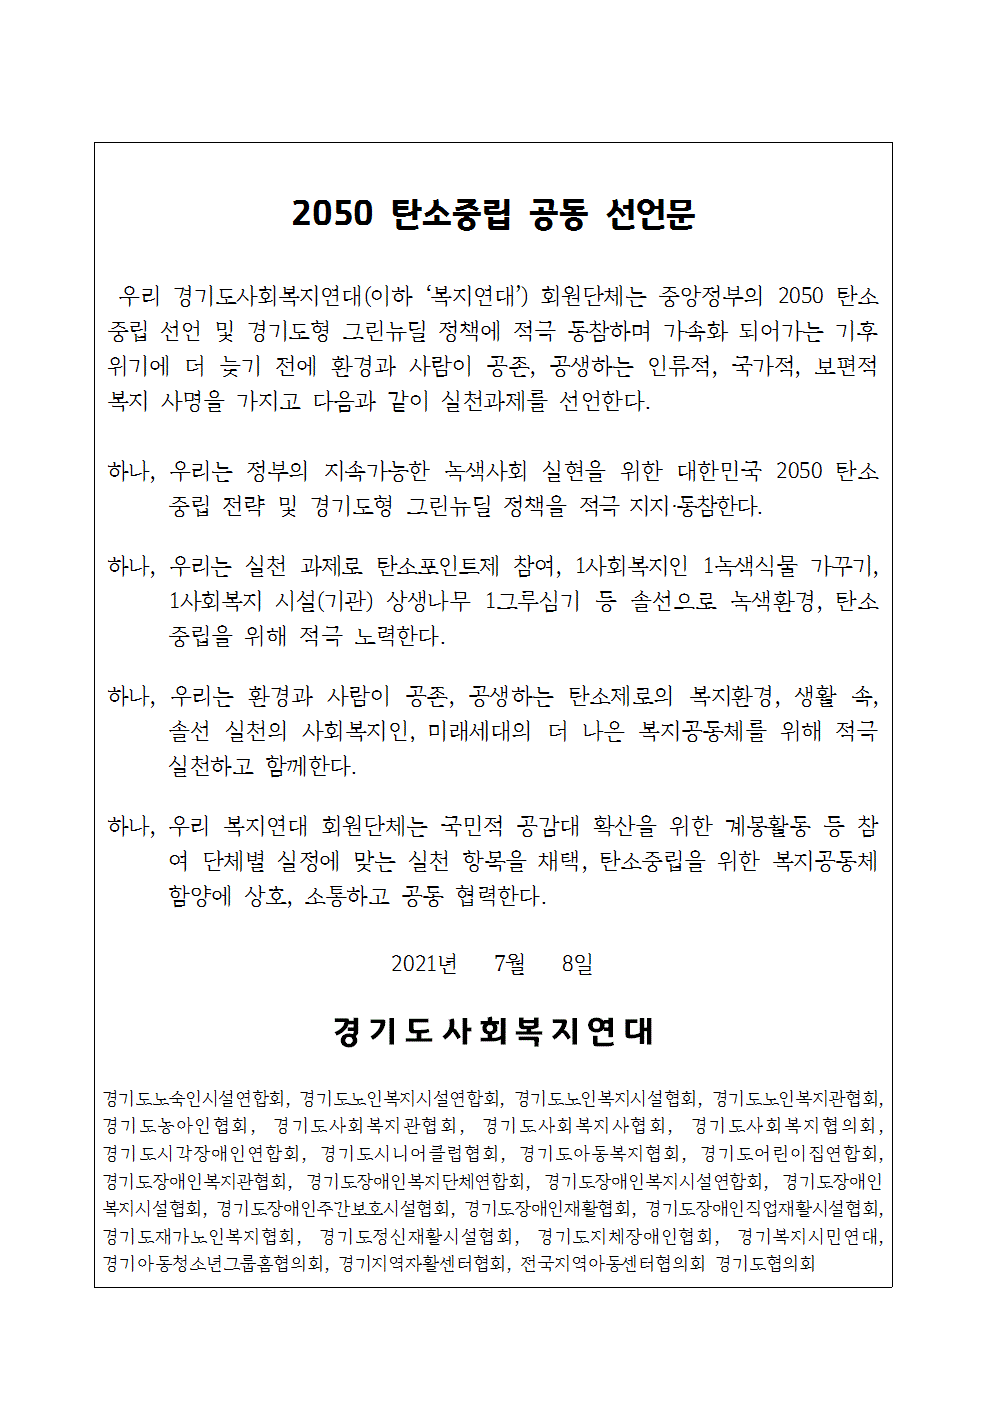 경기도사회복지연대 2050 탄소중립 공동 선언문